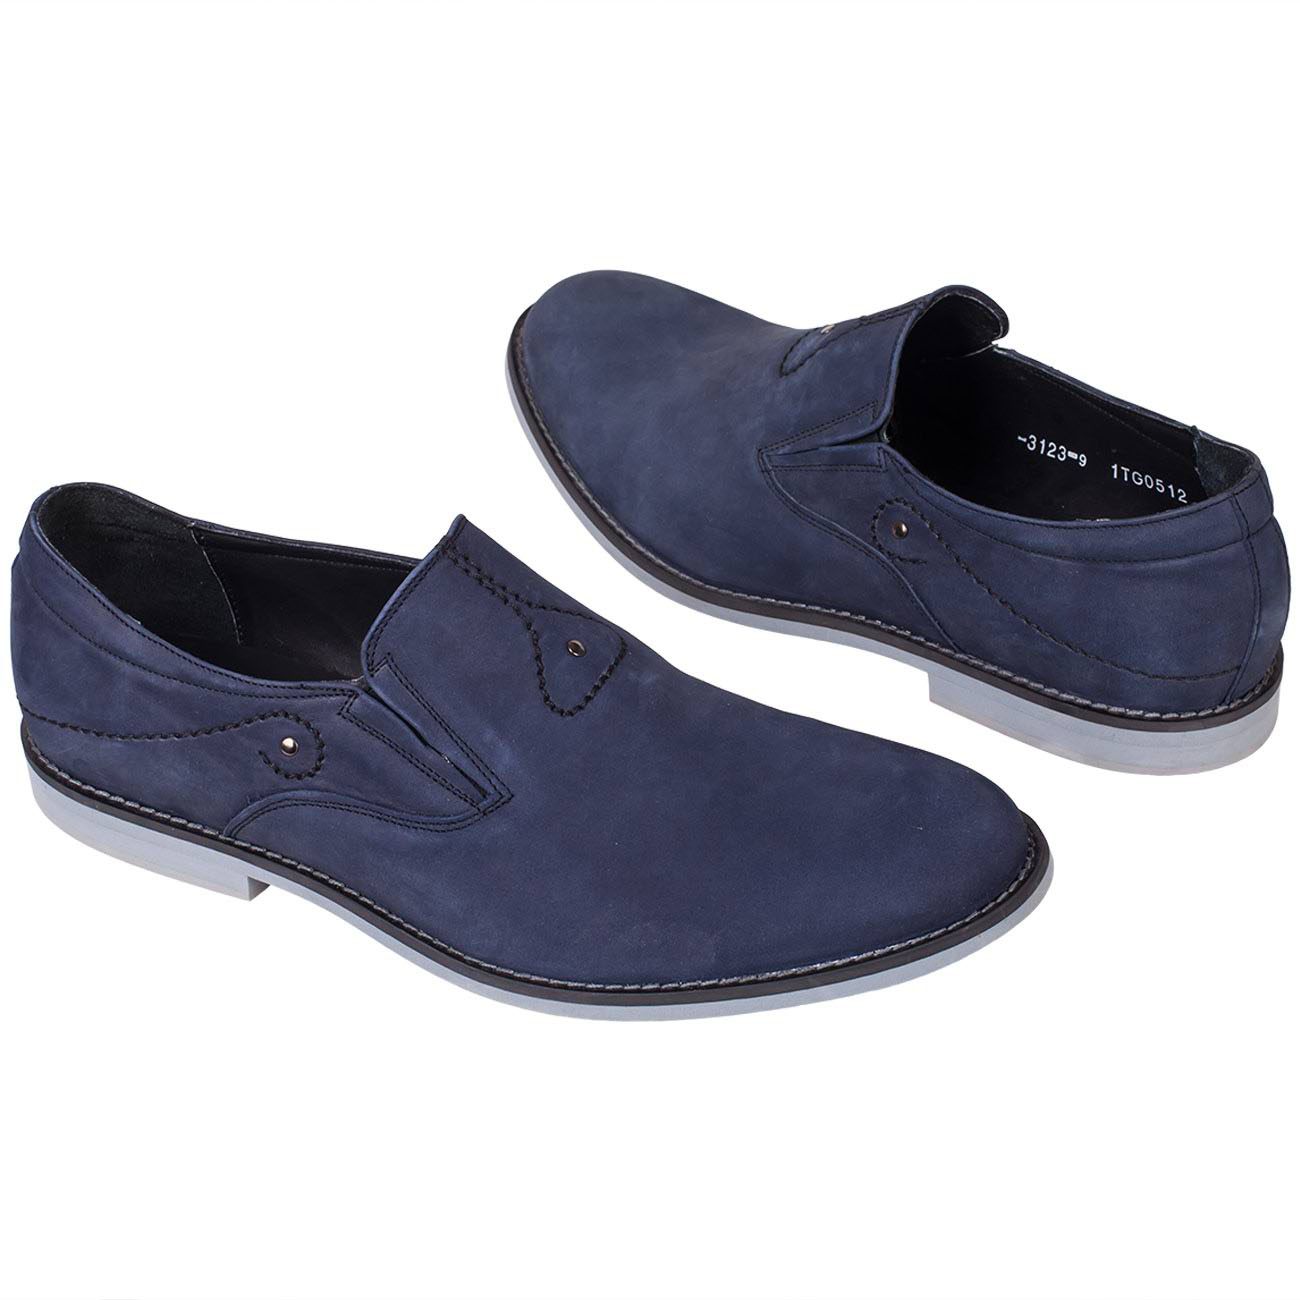 Синие мужские туфли без шнурков с белой подошвой купить в интернет магазине  Kwinto